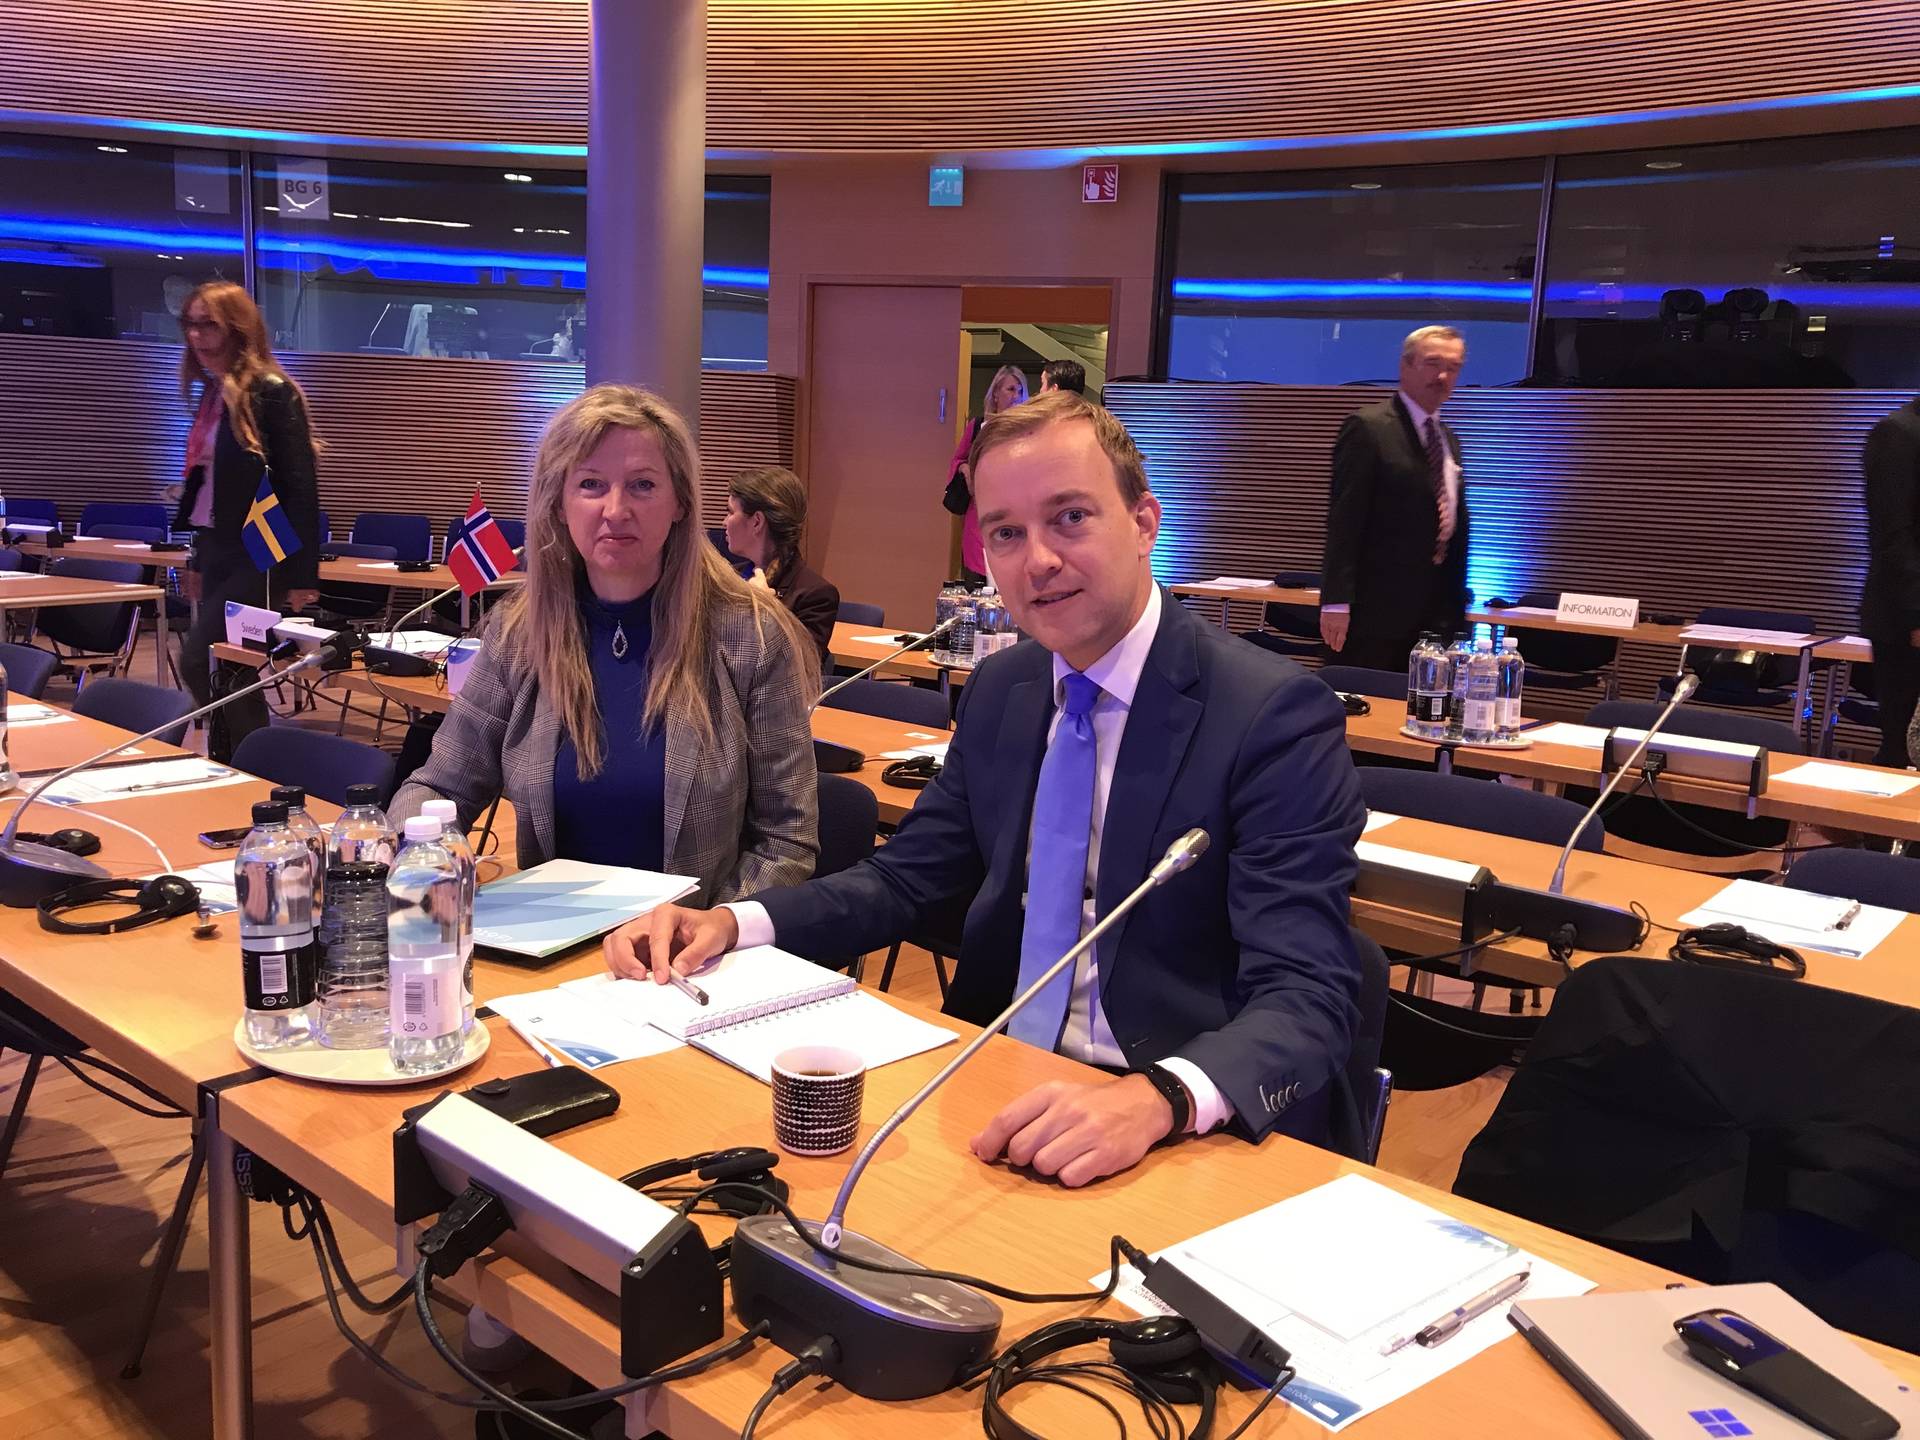 Kamerleden bij de interparlementaire conferentie over klimaat in Helsinki